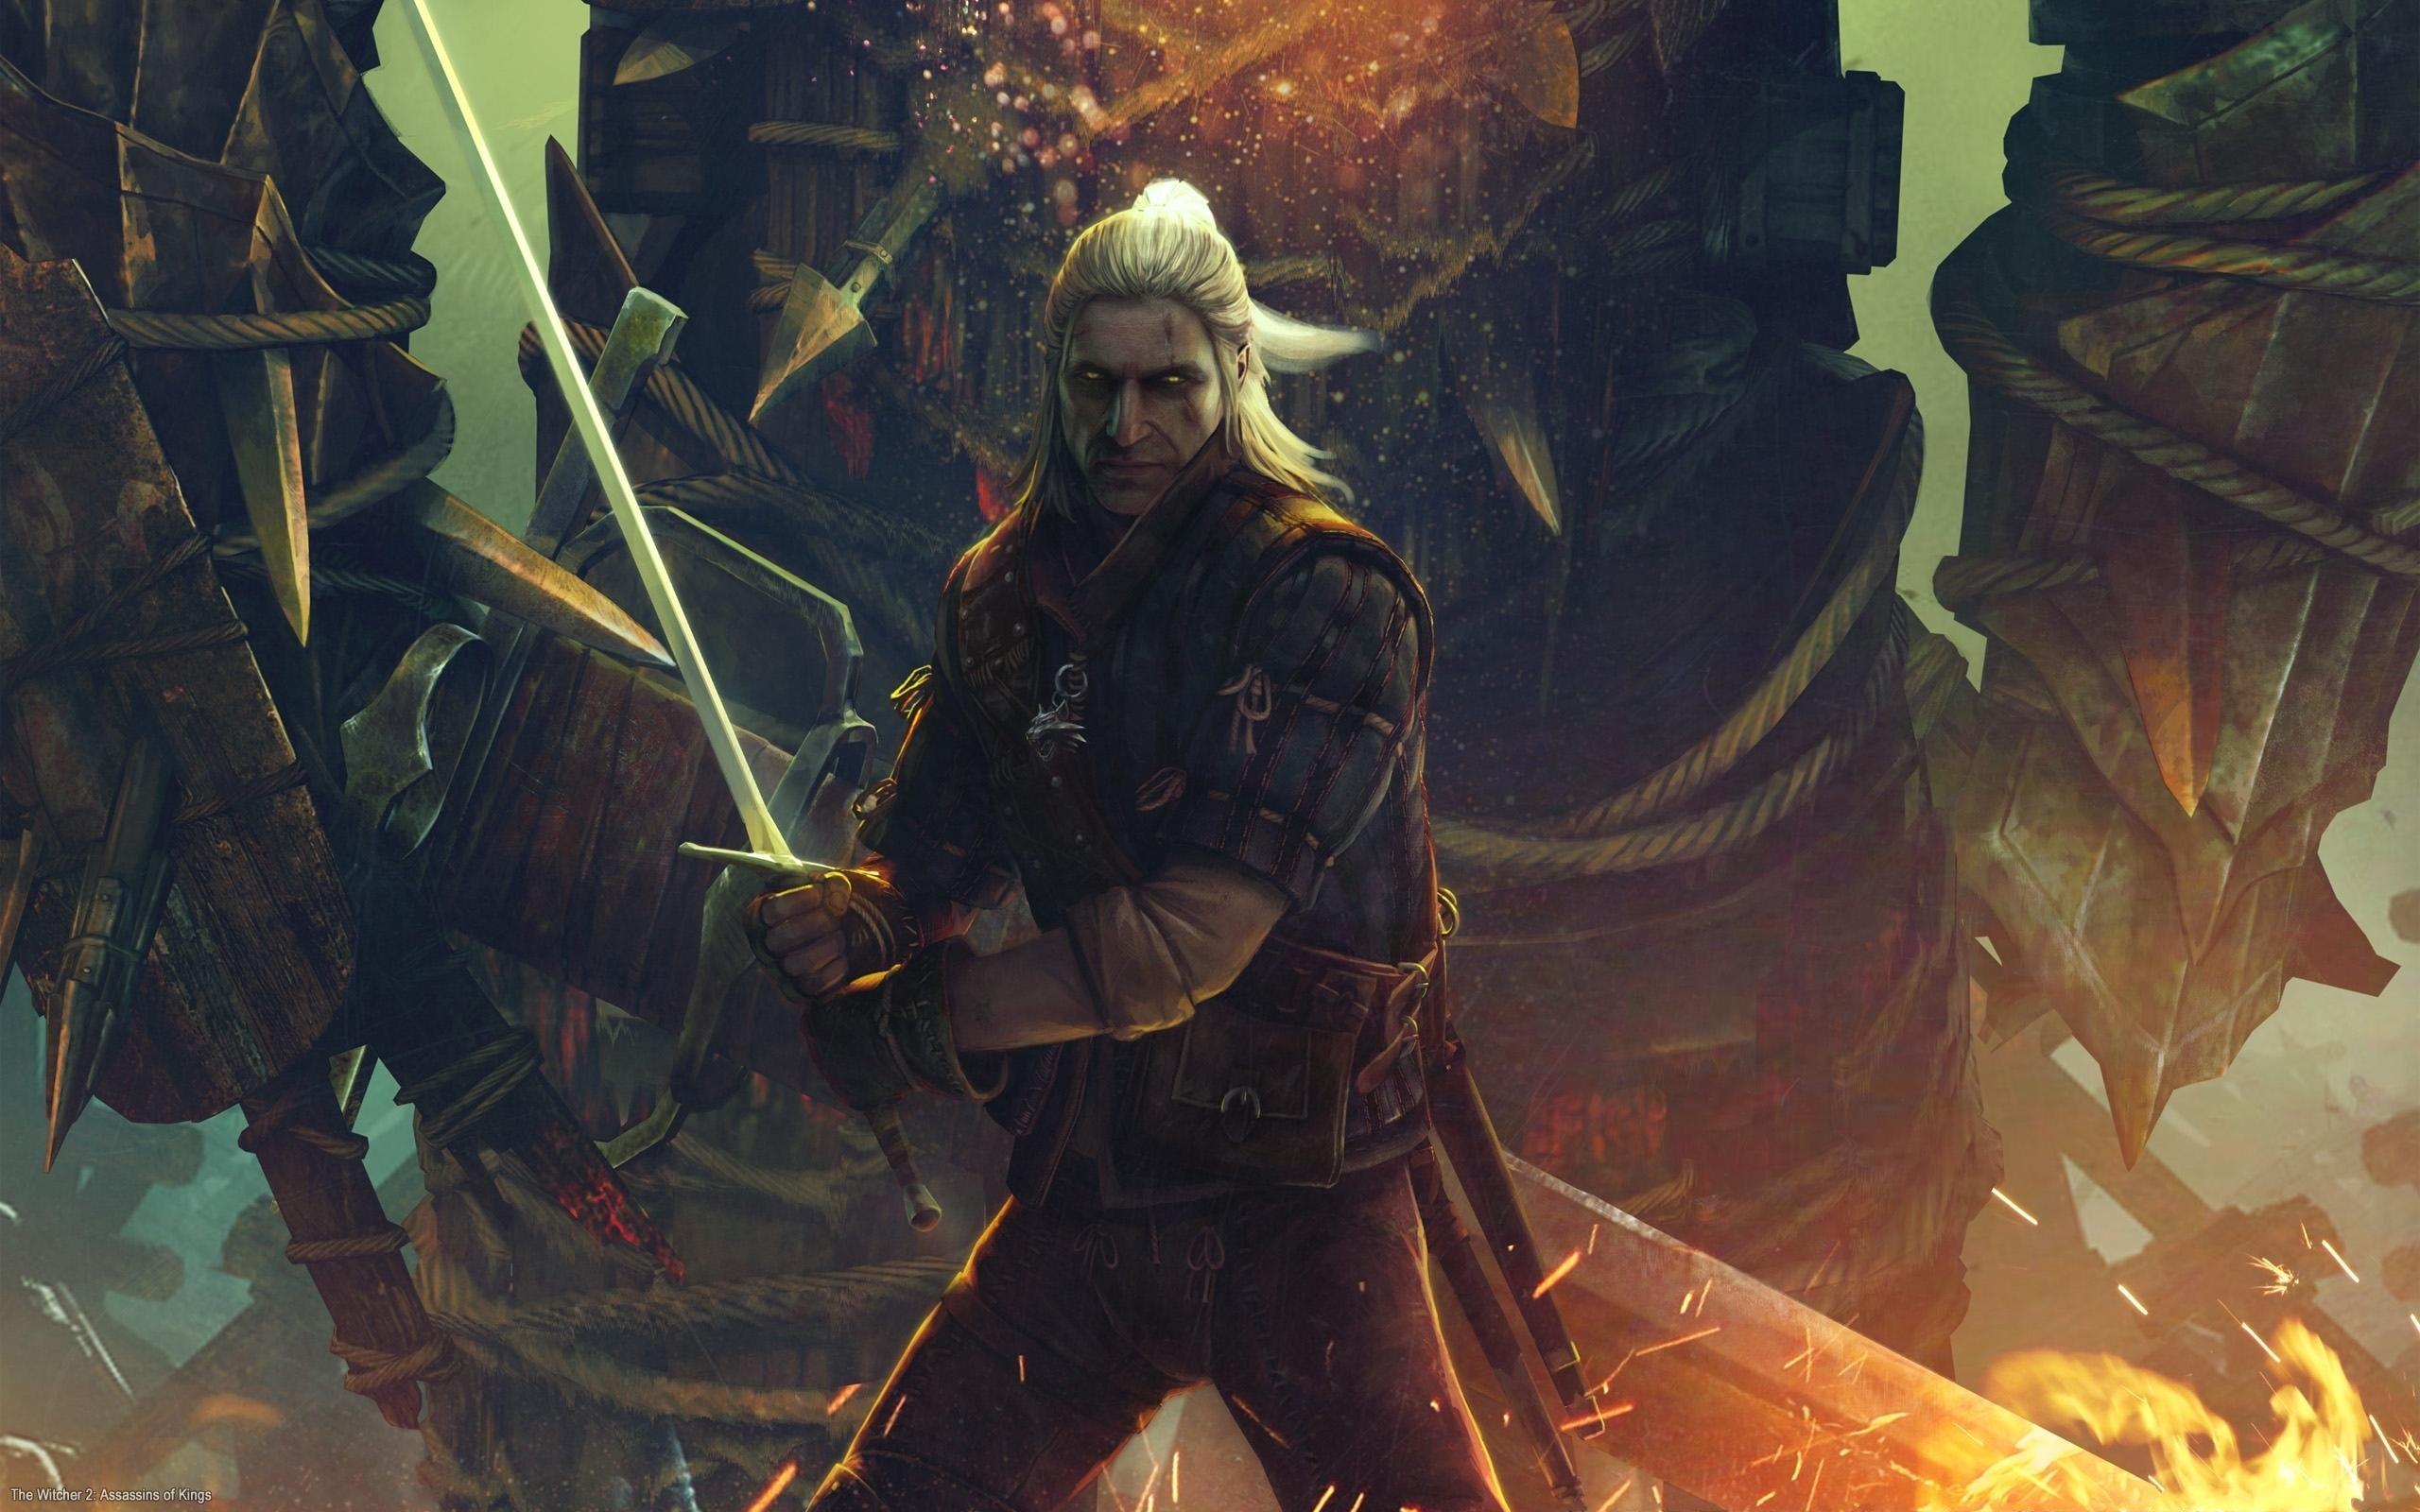 壁紙 ウィッチャー The Witcher 2 Assassins Of Kings 魔法剣士ゲラルト ゲーム ダウンロード 写真